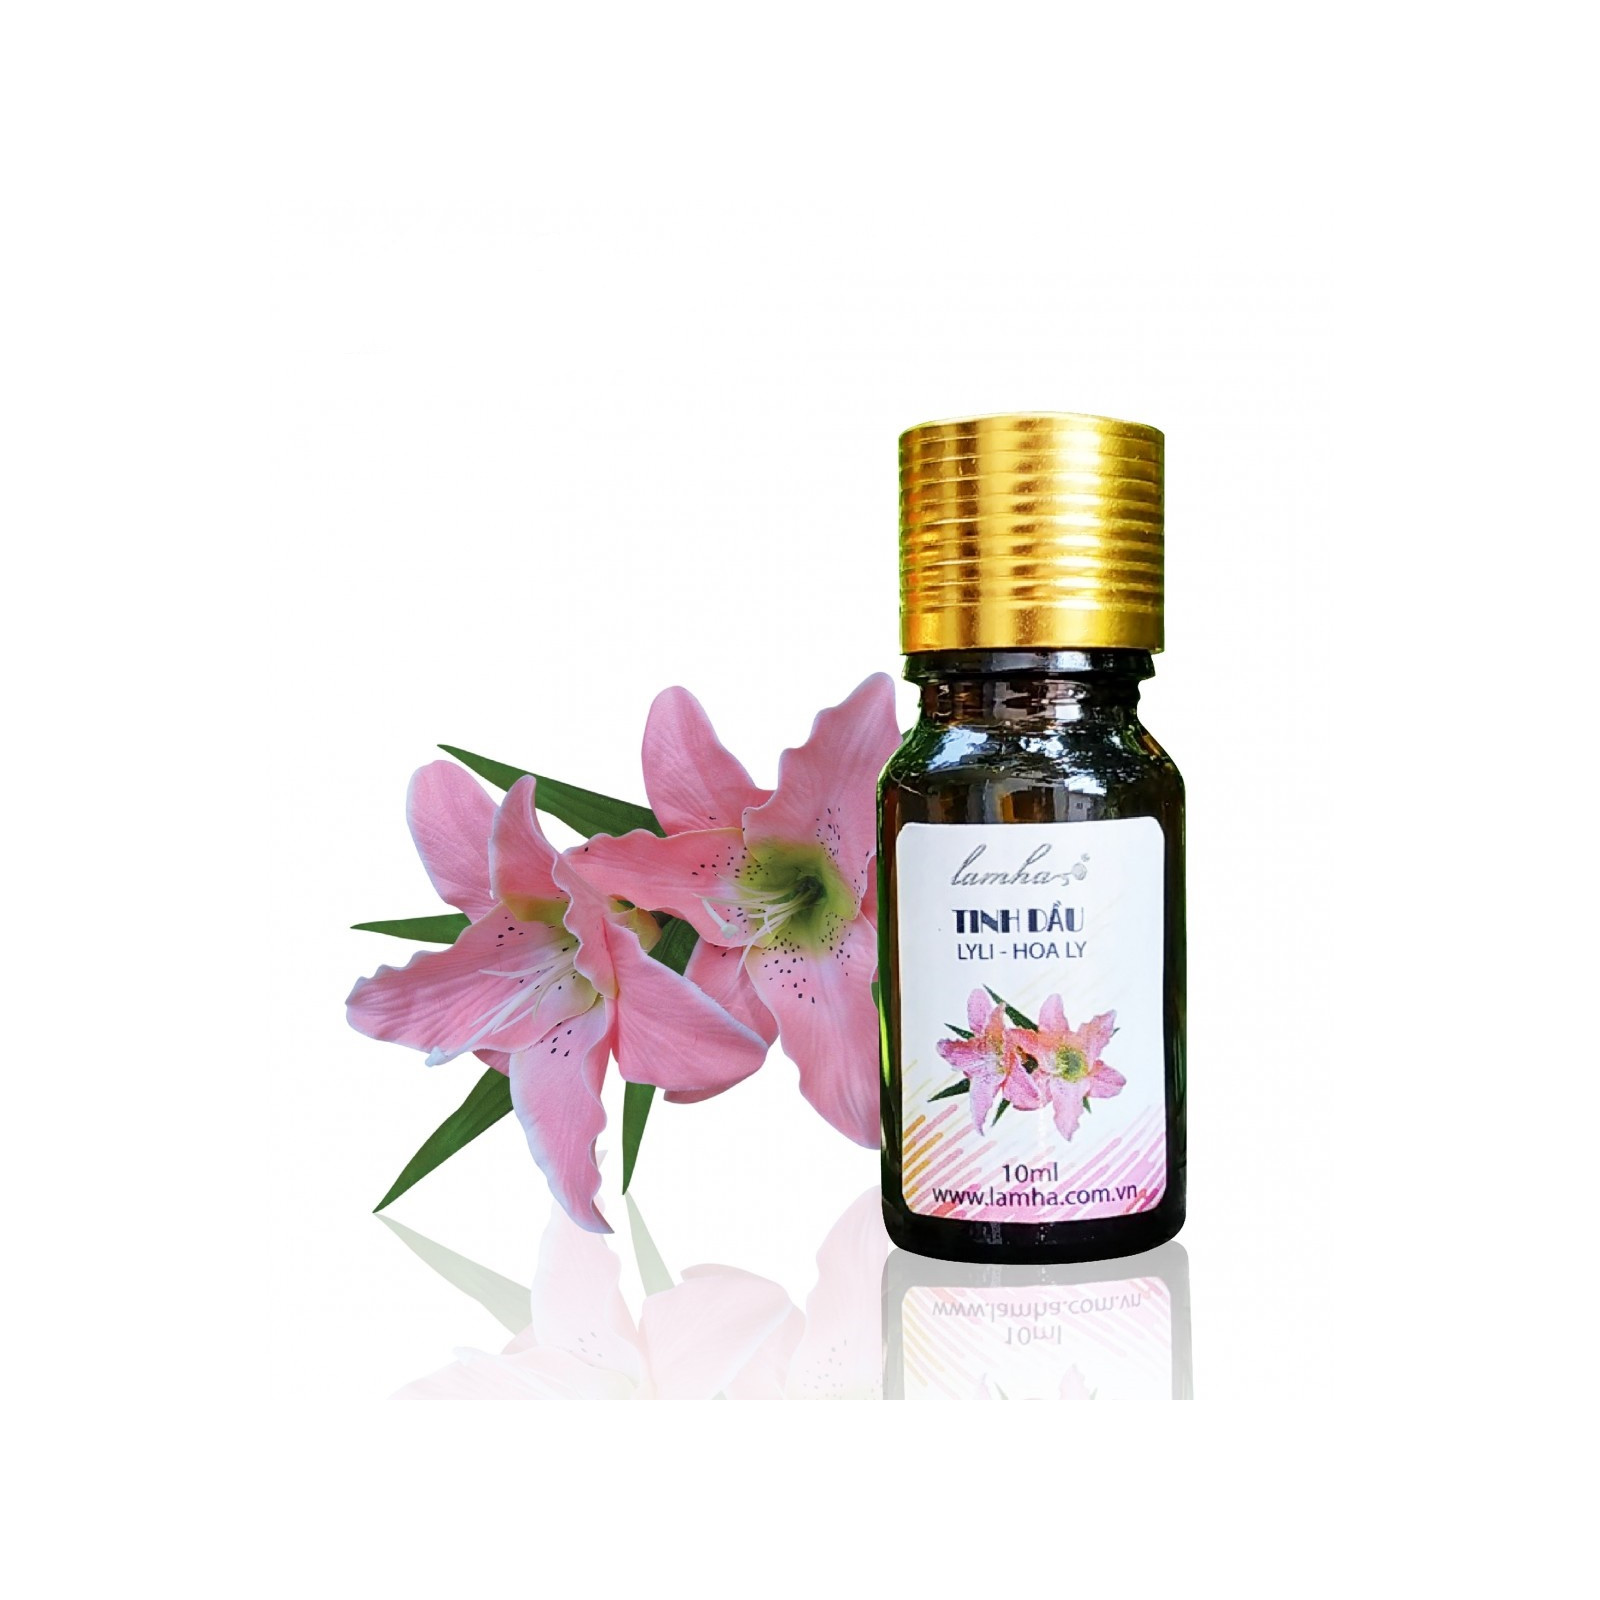 Tinh dầu Hoa Ly Lam Hà Lyli (10ml): giúp thanh lọc không khí, tăng khả năng hoạt động của phổi, kích thích tuần hoàn và có tác dụng chống vi khuẩn, nấm, ẩm mốc.